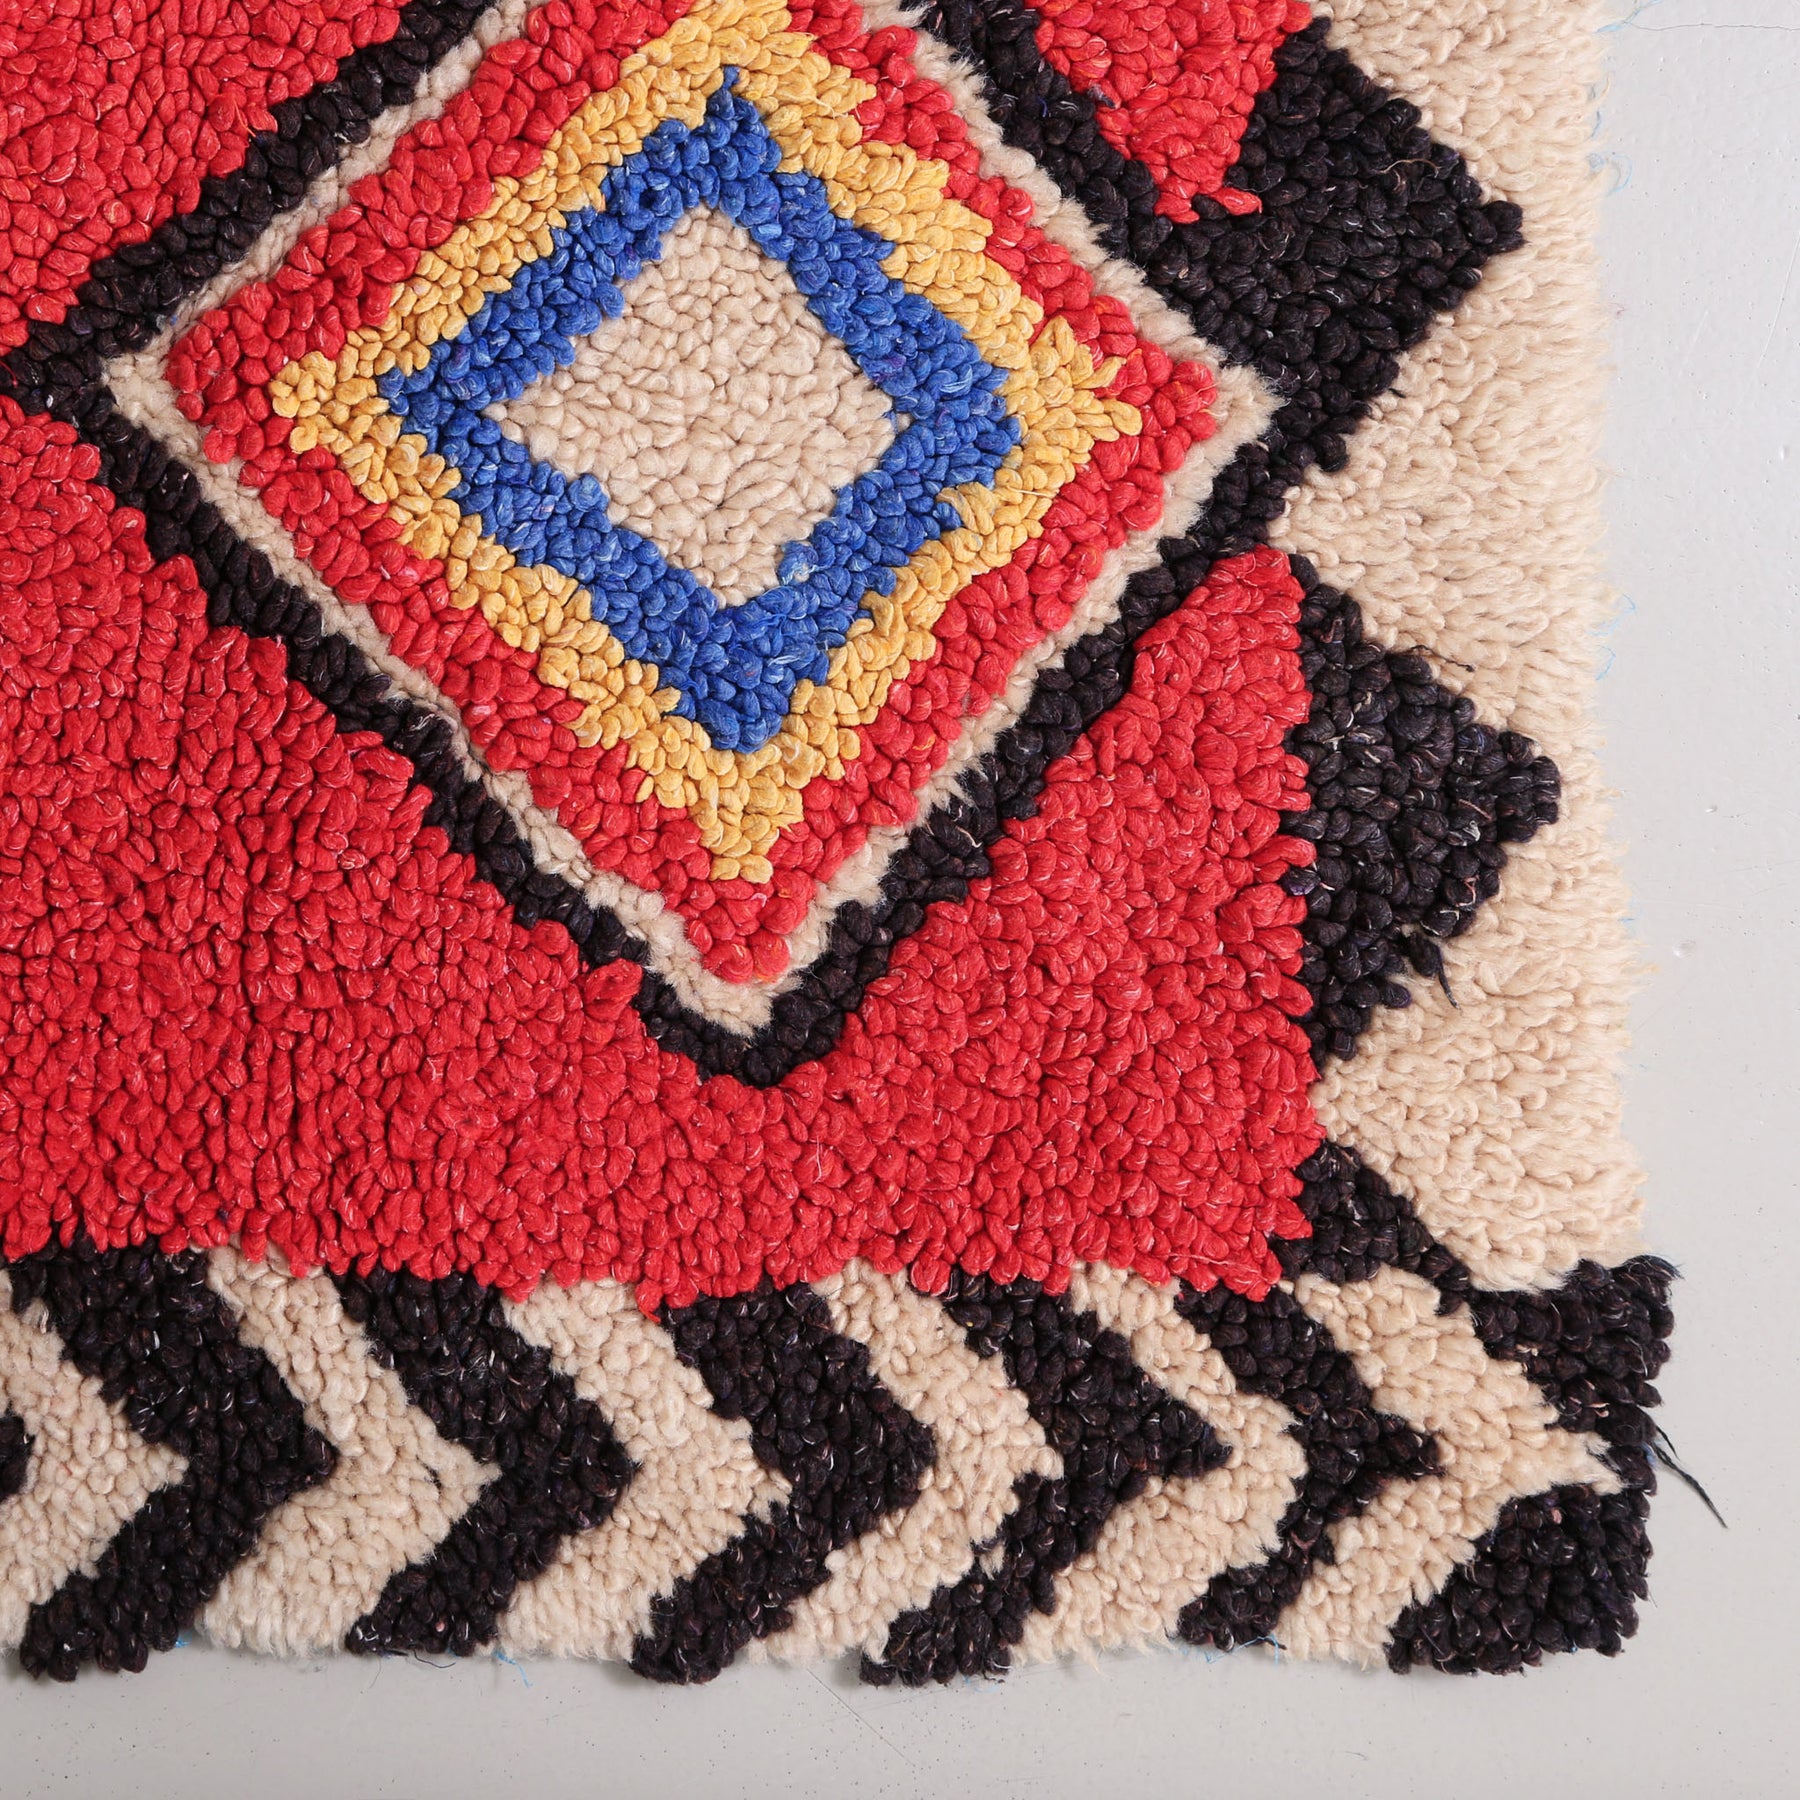 angolo di un tappeto zindeck realizzato annodando lana colorato si un sacchetto di plastica. base lana rossa con rombo colore nero bianco rosso giallo blu e bianco. i bordi sono bianchi e neri